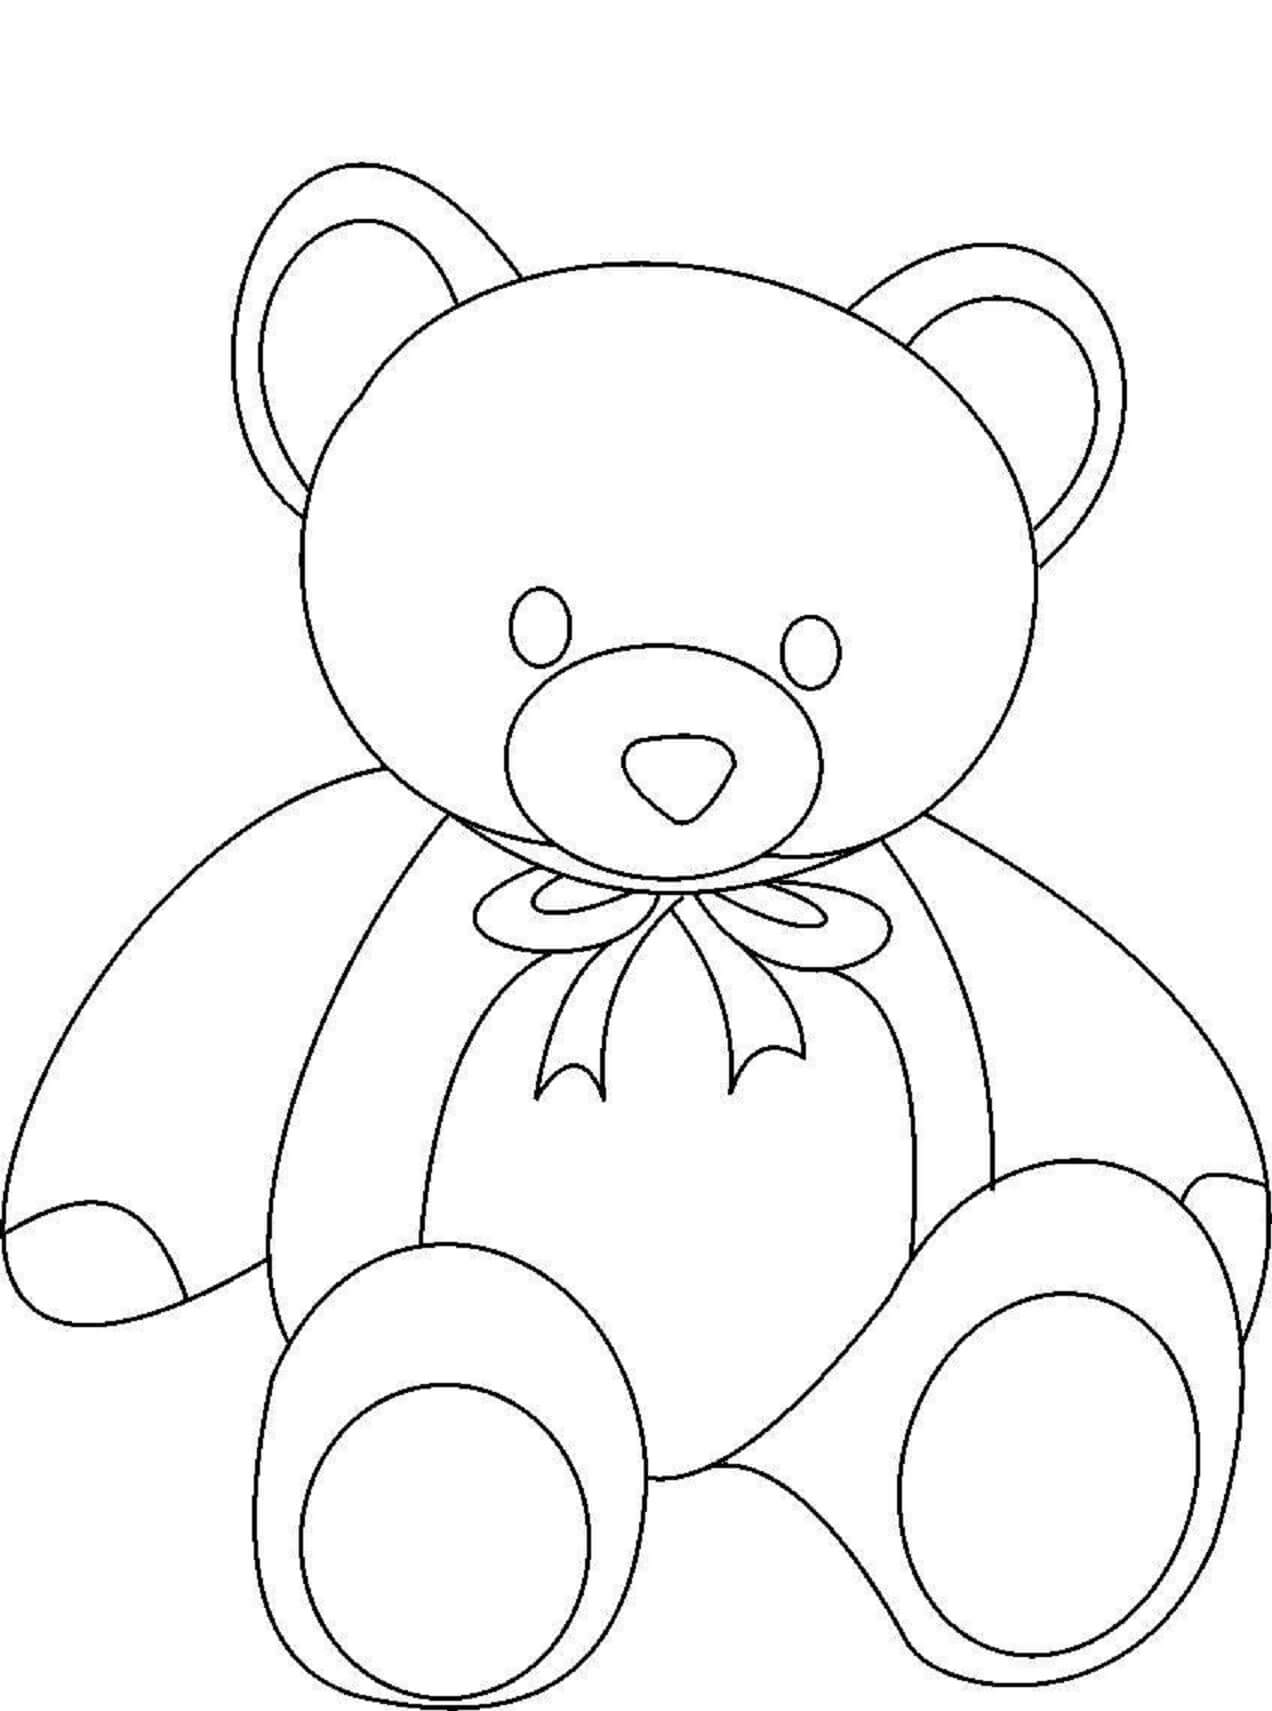 Teddy Bear Sitting